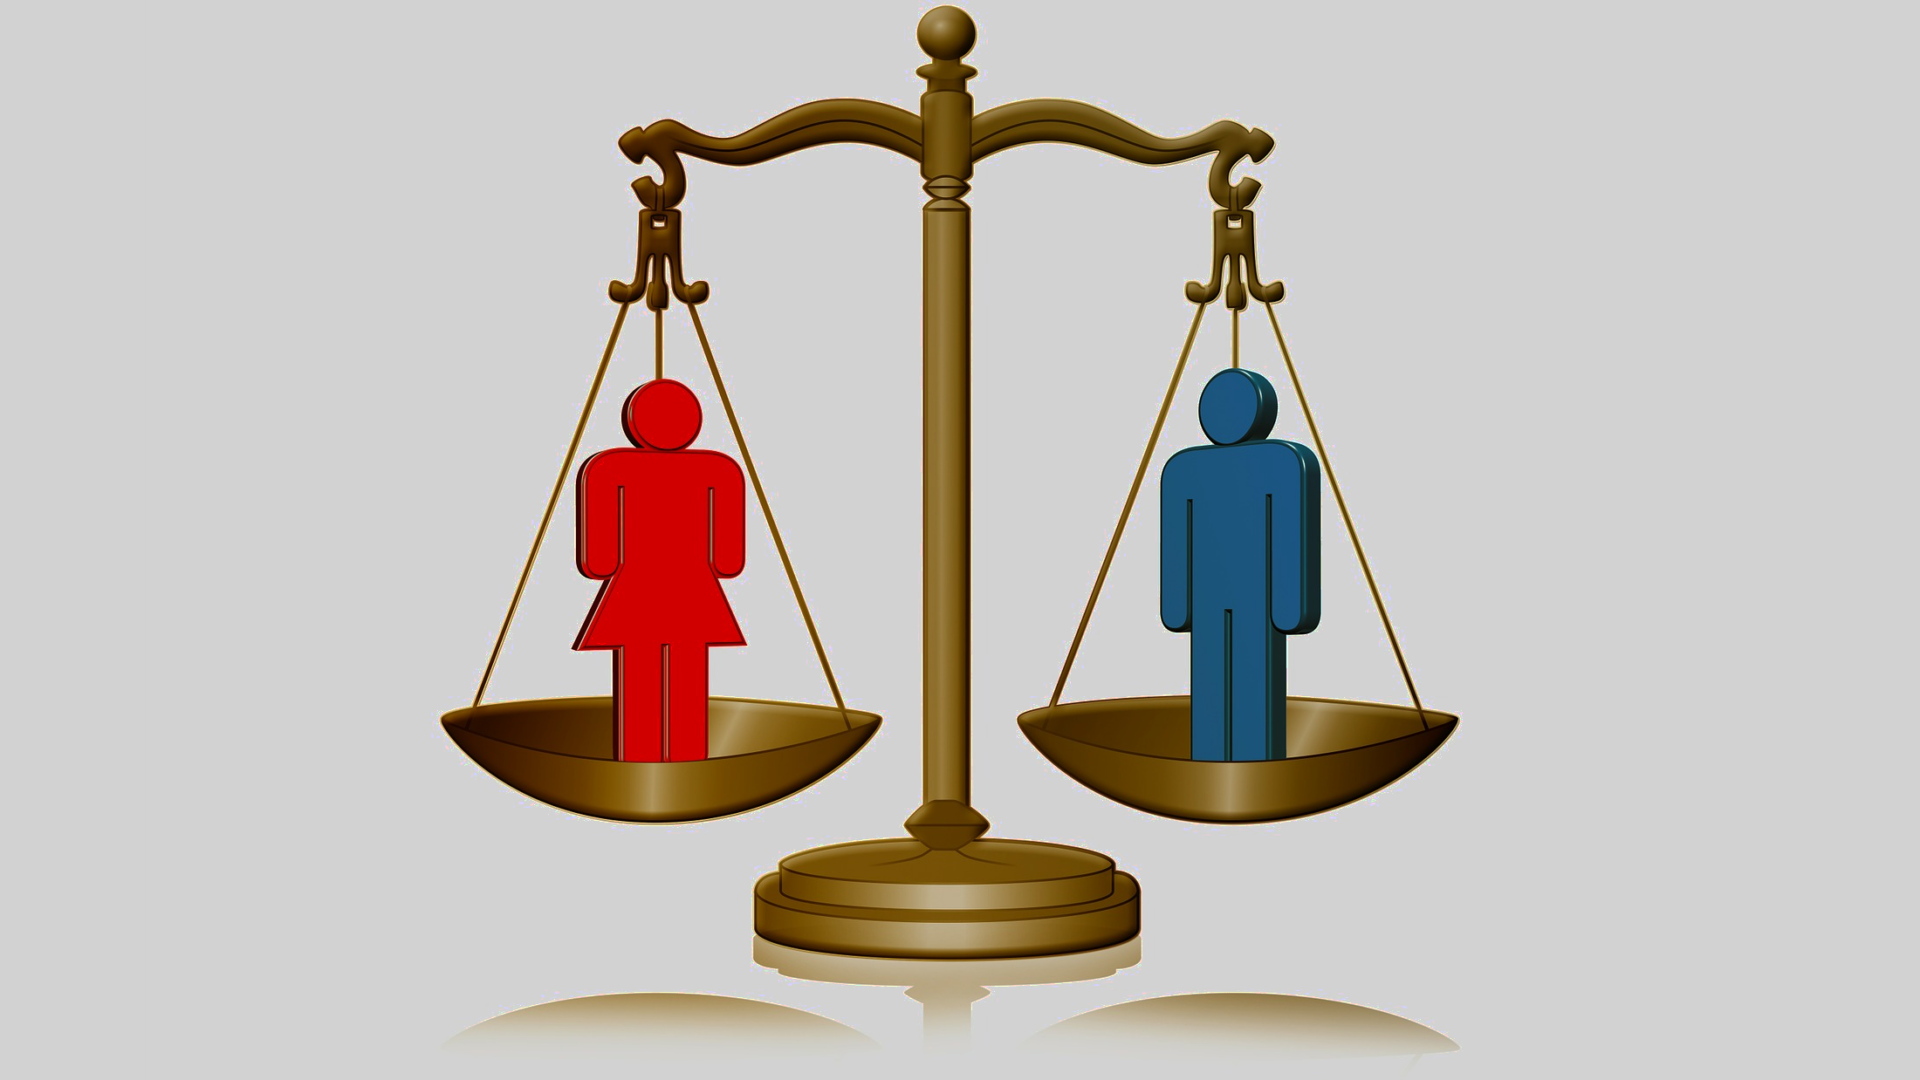 Gleichheit der Geschlechter in der Kirche wird gefordert.